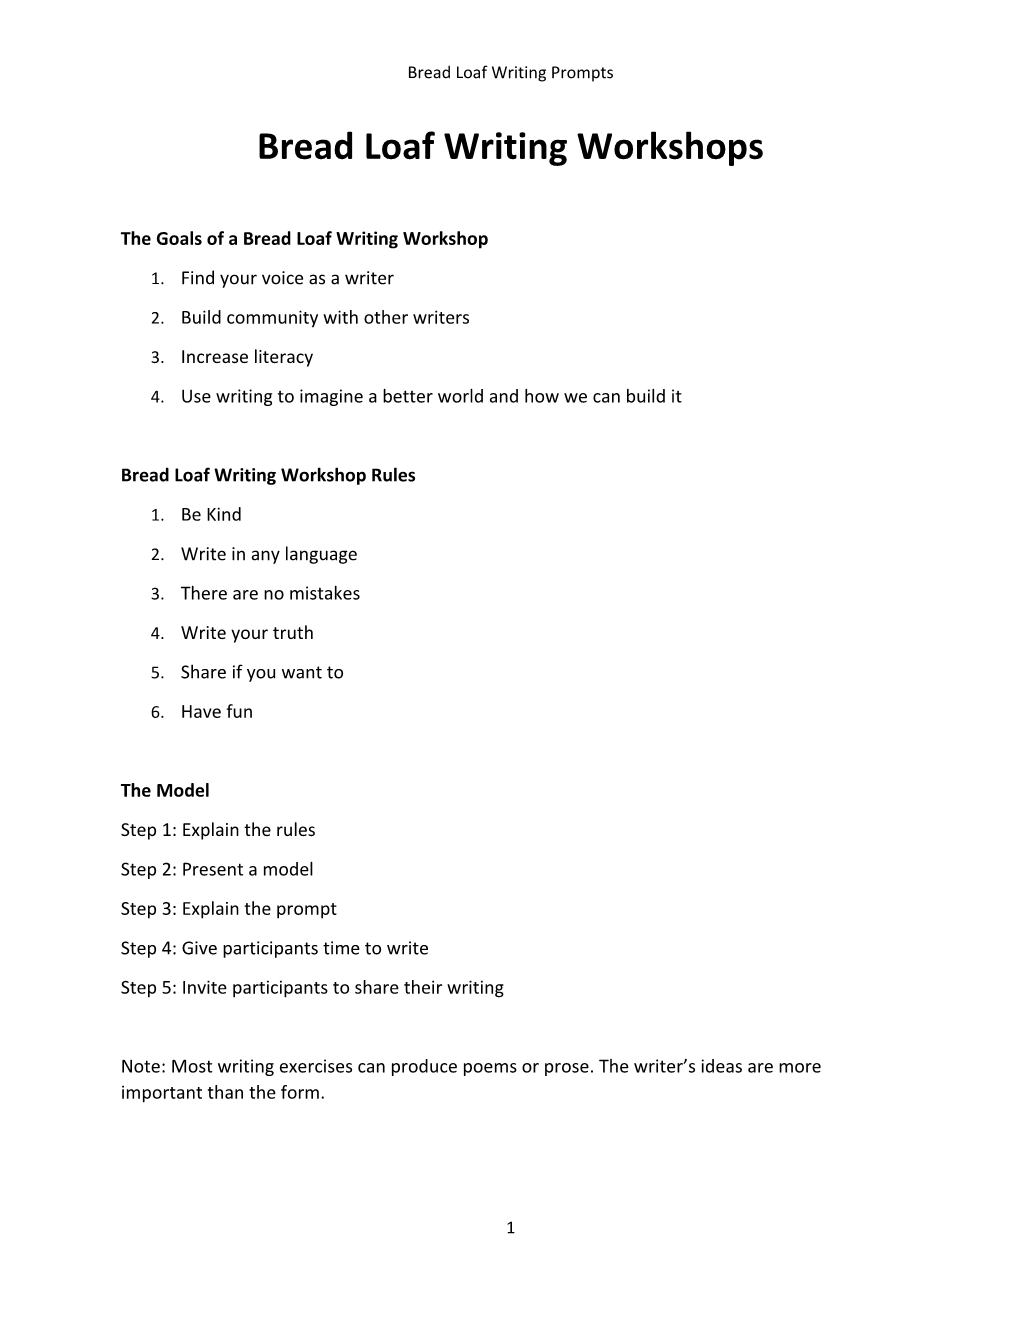 Bread Loaf Writing Workshops